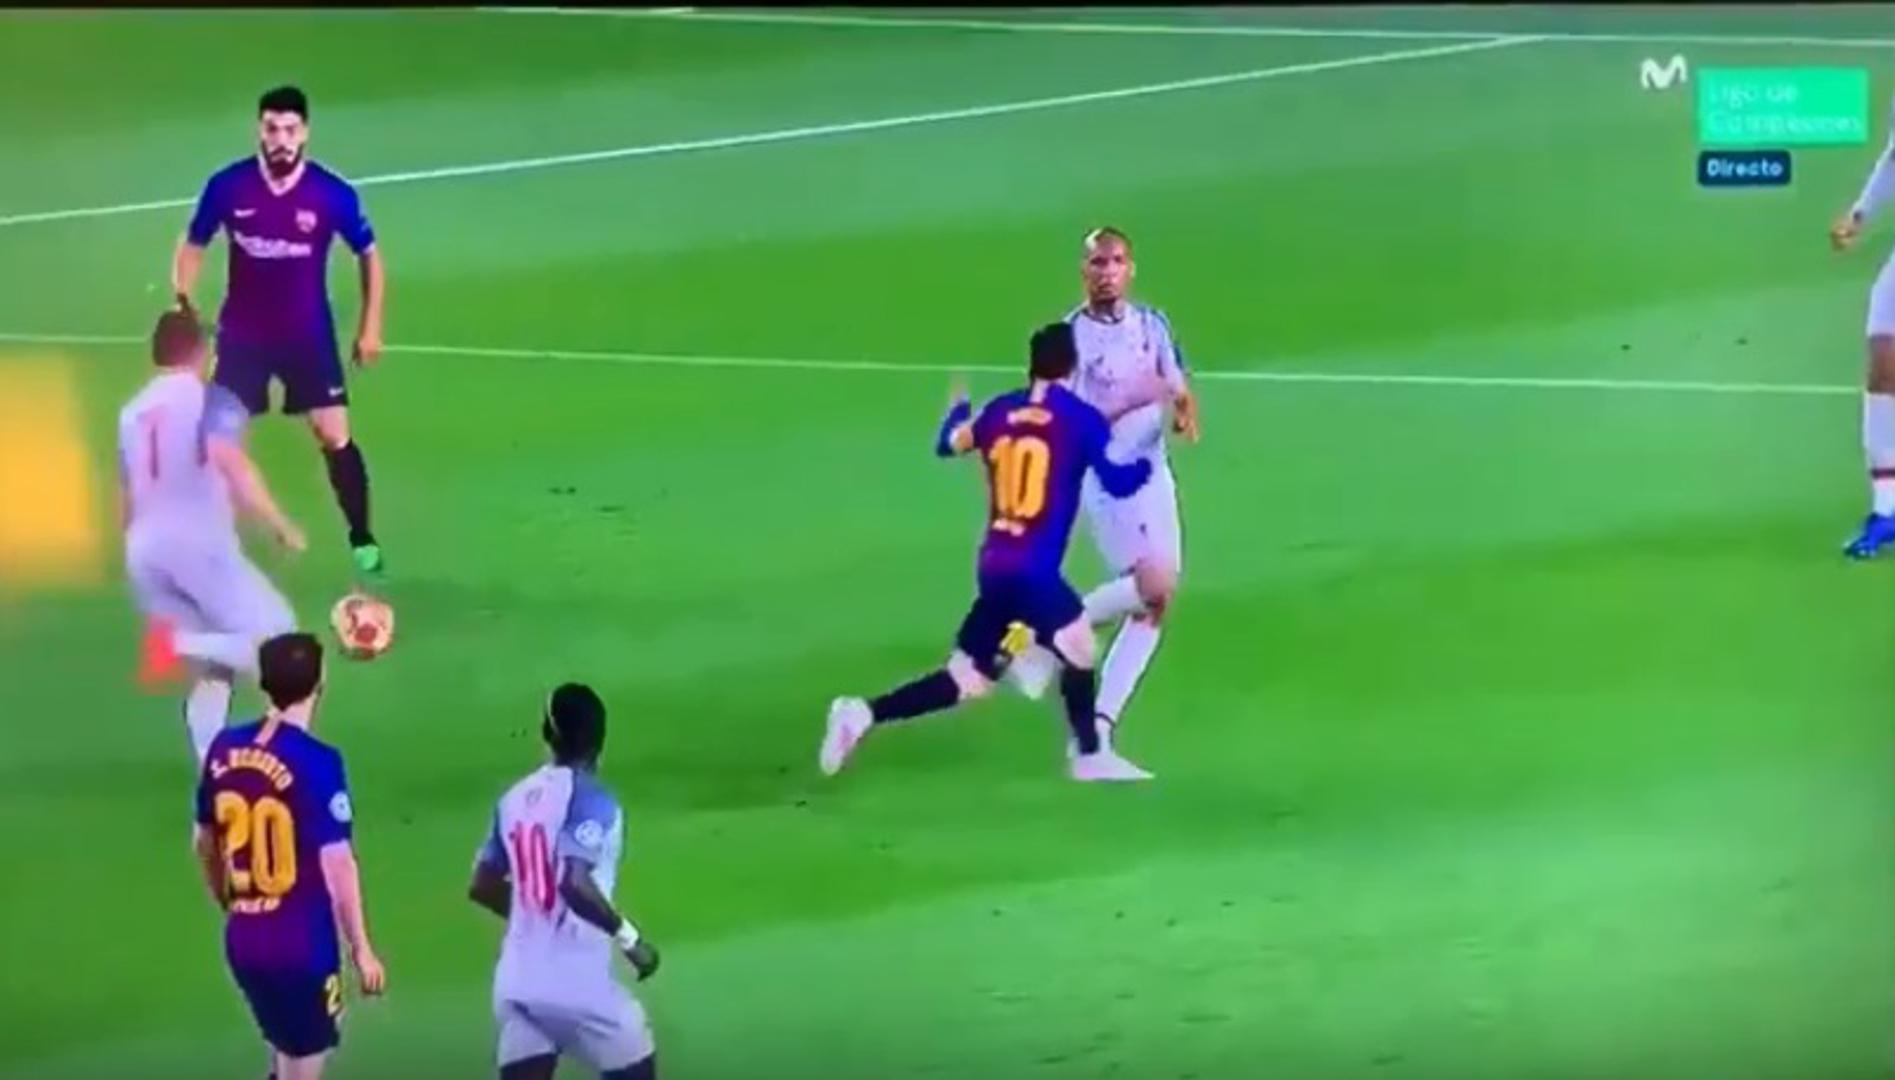 Junak pobjede Katalonaca bio je Lionel Messi koji je zabio dva gola, u 75. i 82. minuti. Njegov drugi gol za 3:0 bio je sjajan, prvo je iznudio slobodni udarac, a onda maestralno pogodio s 25 metara.